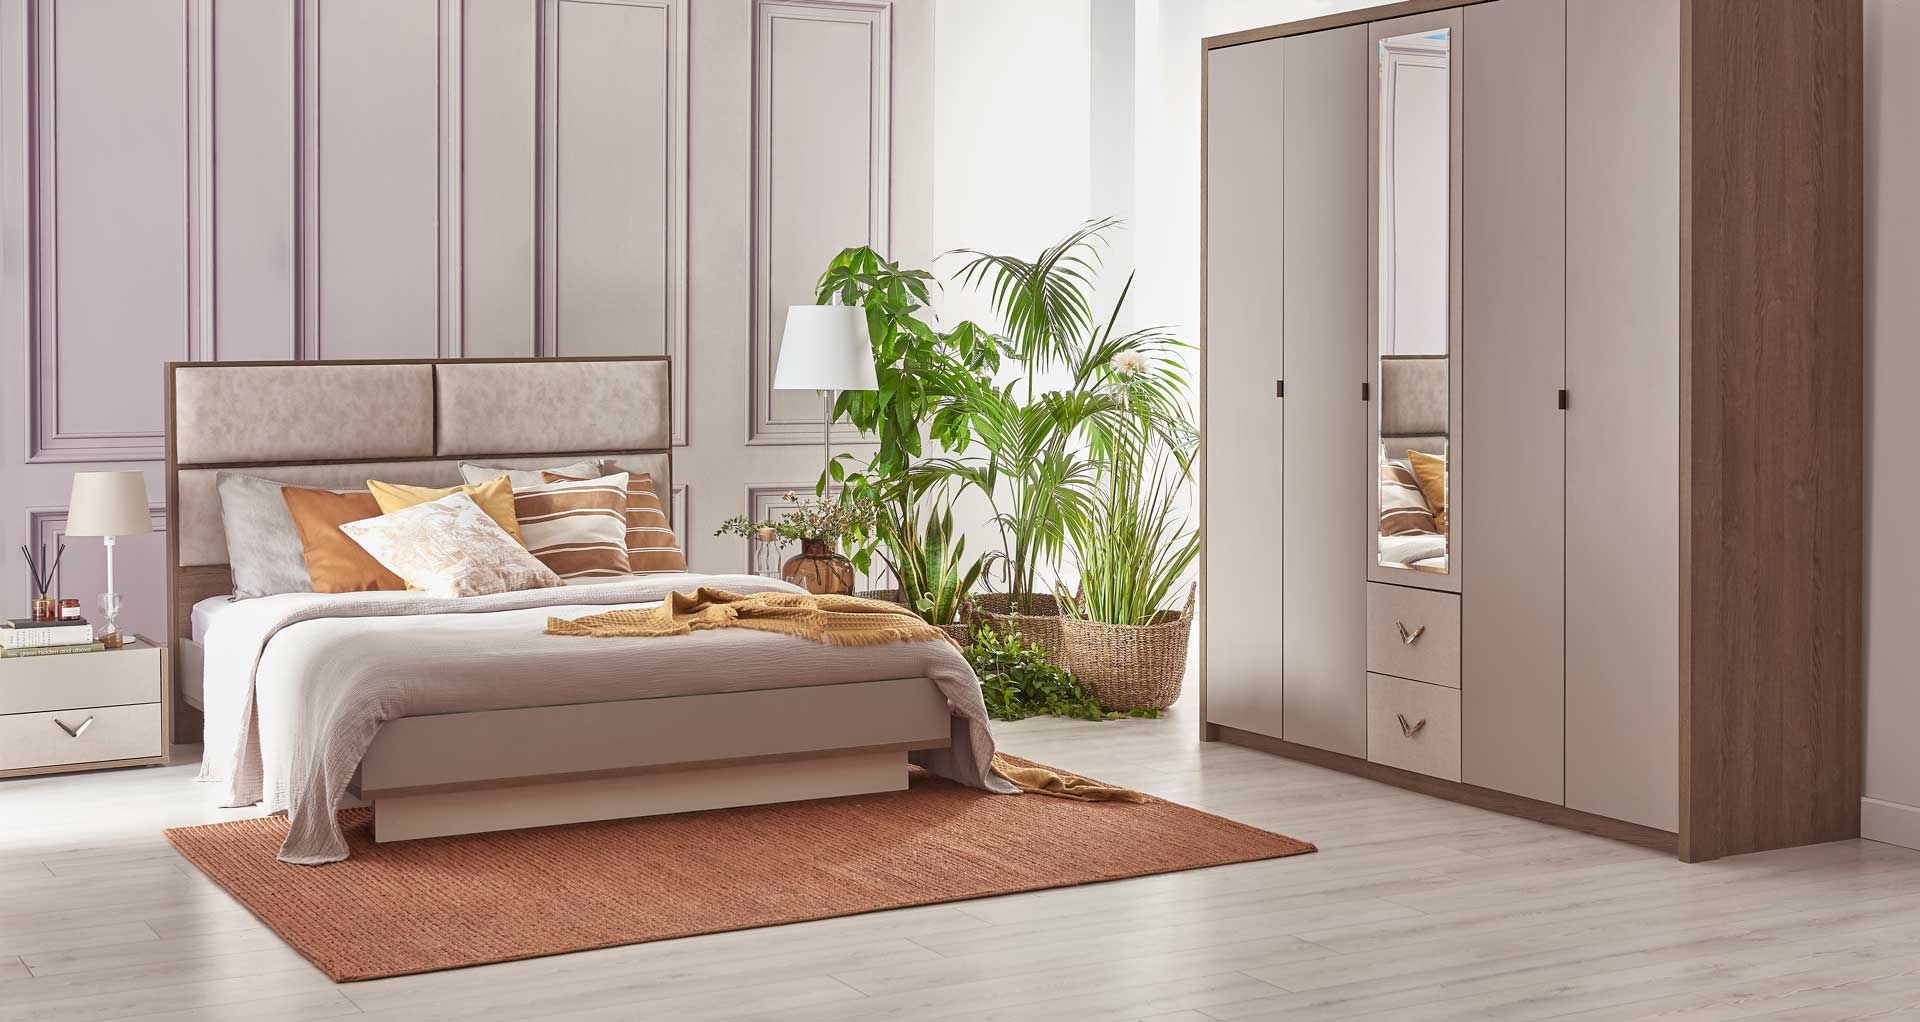 Çetmen Yatak Odası Mobilya Modelleri 2020 DekorBlog